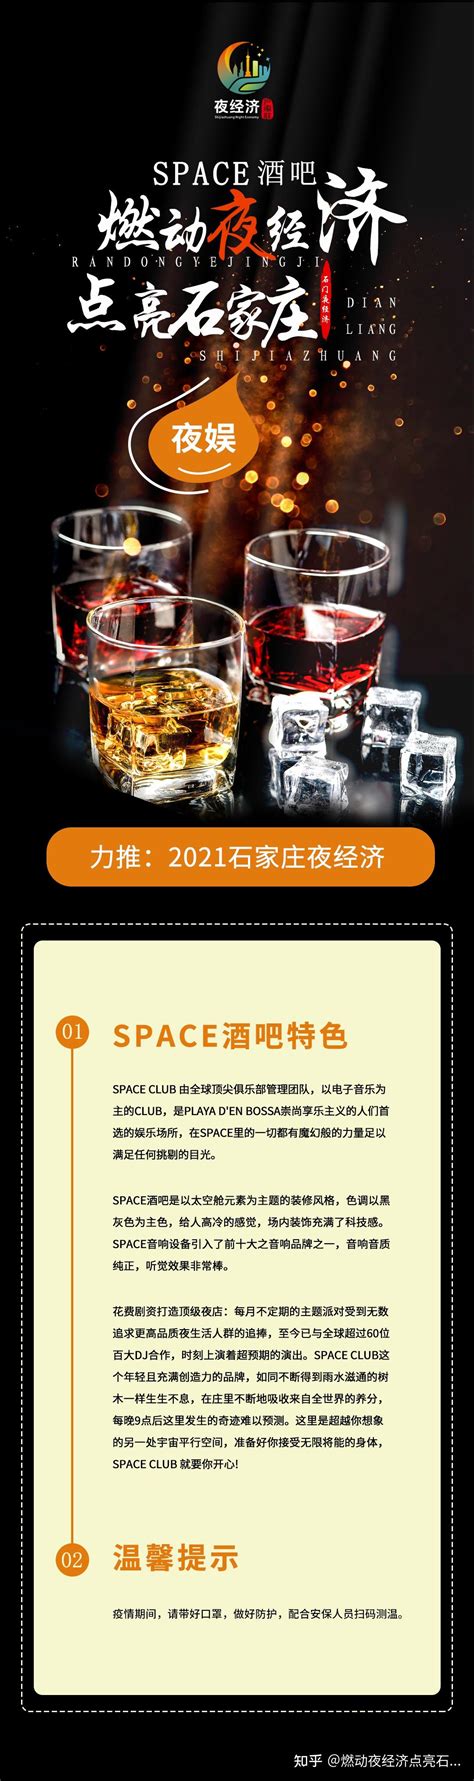 石家庄SPACE酒吧消费价格 塔坛国际商贸城_石家庄酒吧预订